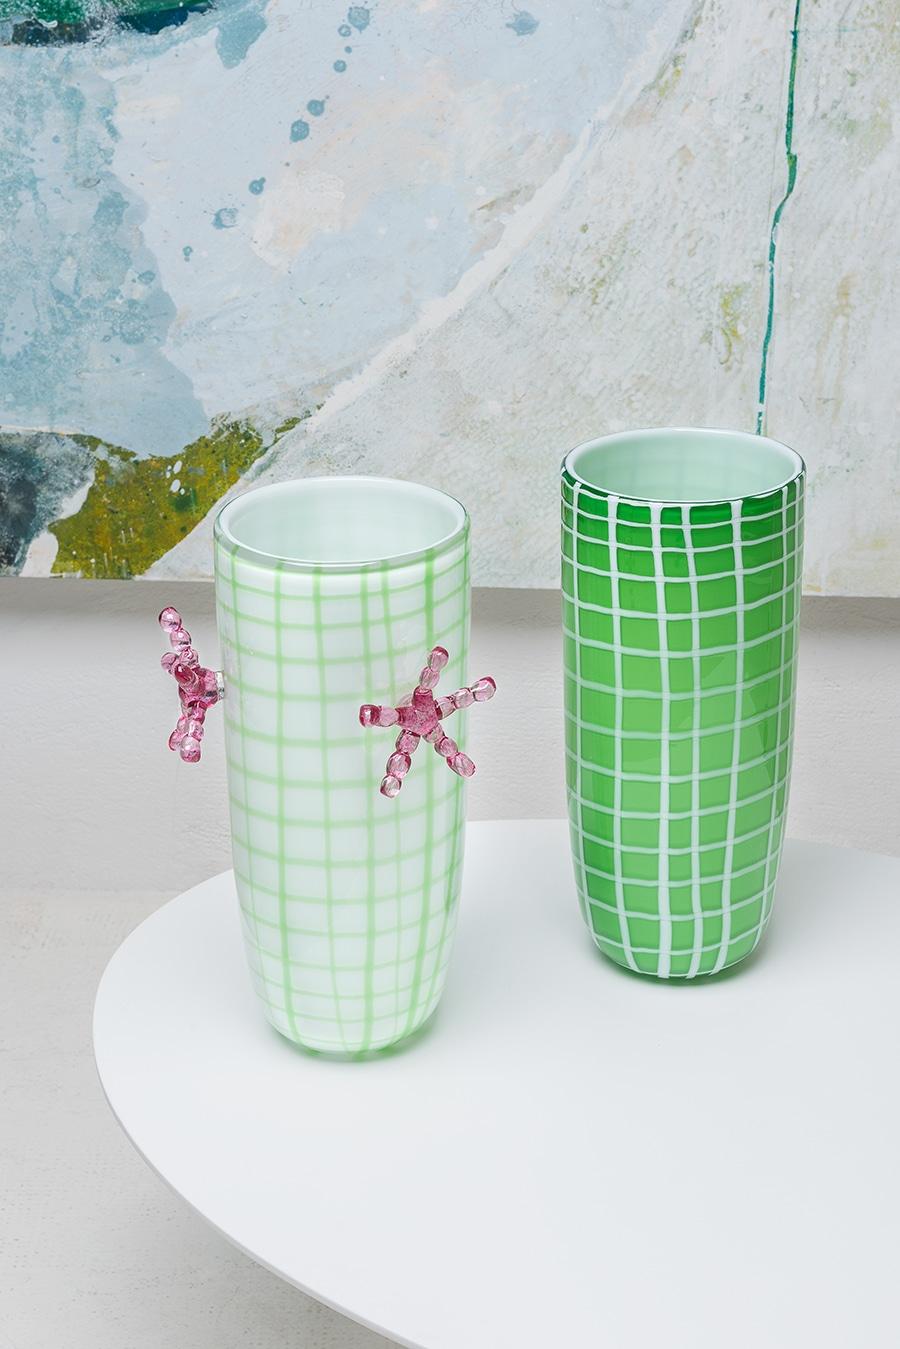 Ce vase, qui fait partie d'une édition limitée, a été conçu par Elena Cutolo, élève du légendaire architecte Ettore Sottsass. Réalisé en verre de Murano soufflé à la bouche, il présente une forme allongée en blanc avec un filet asymétrique de lignes